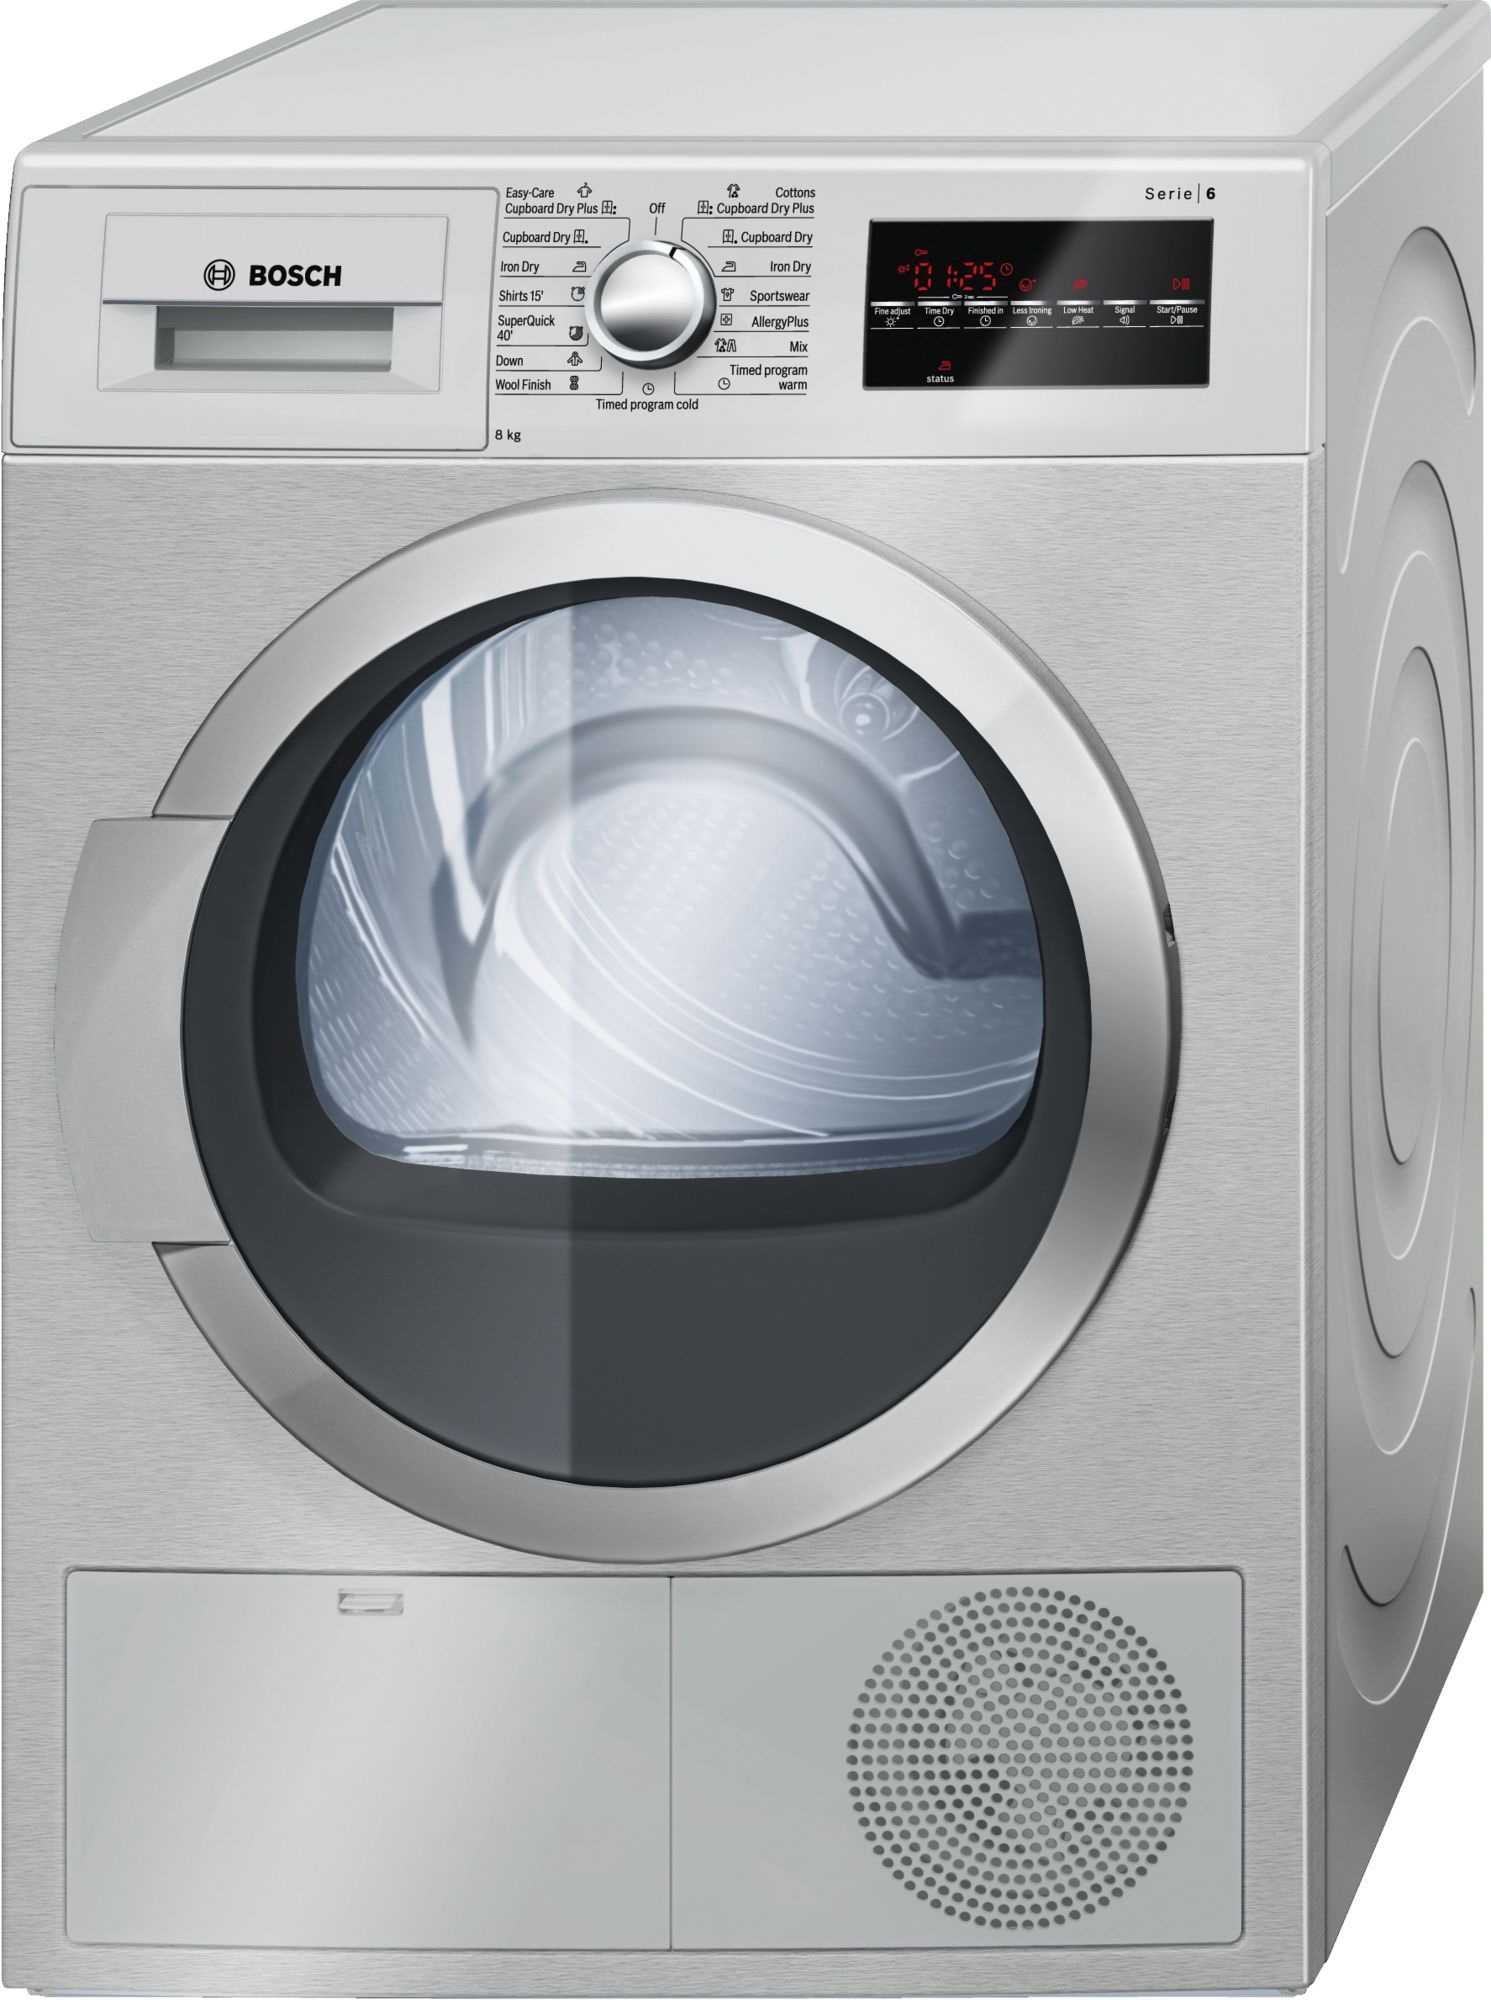 Габаритные размеры наиболее популярных моделей стиральных машинок бош